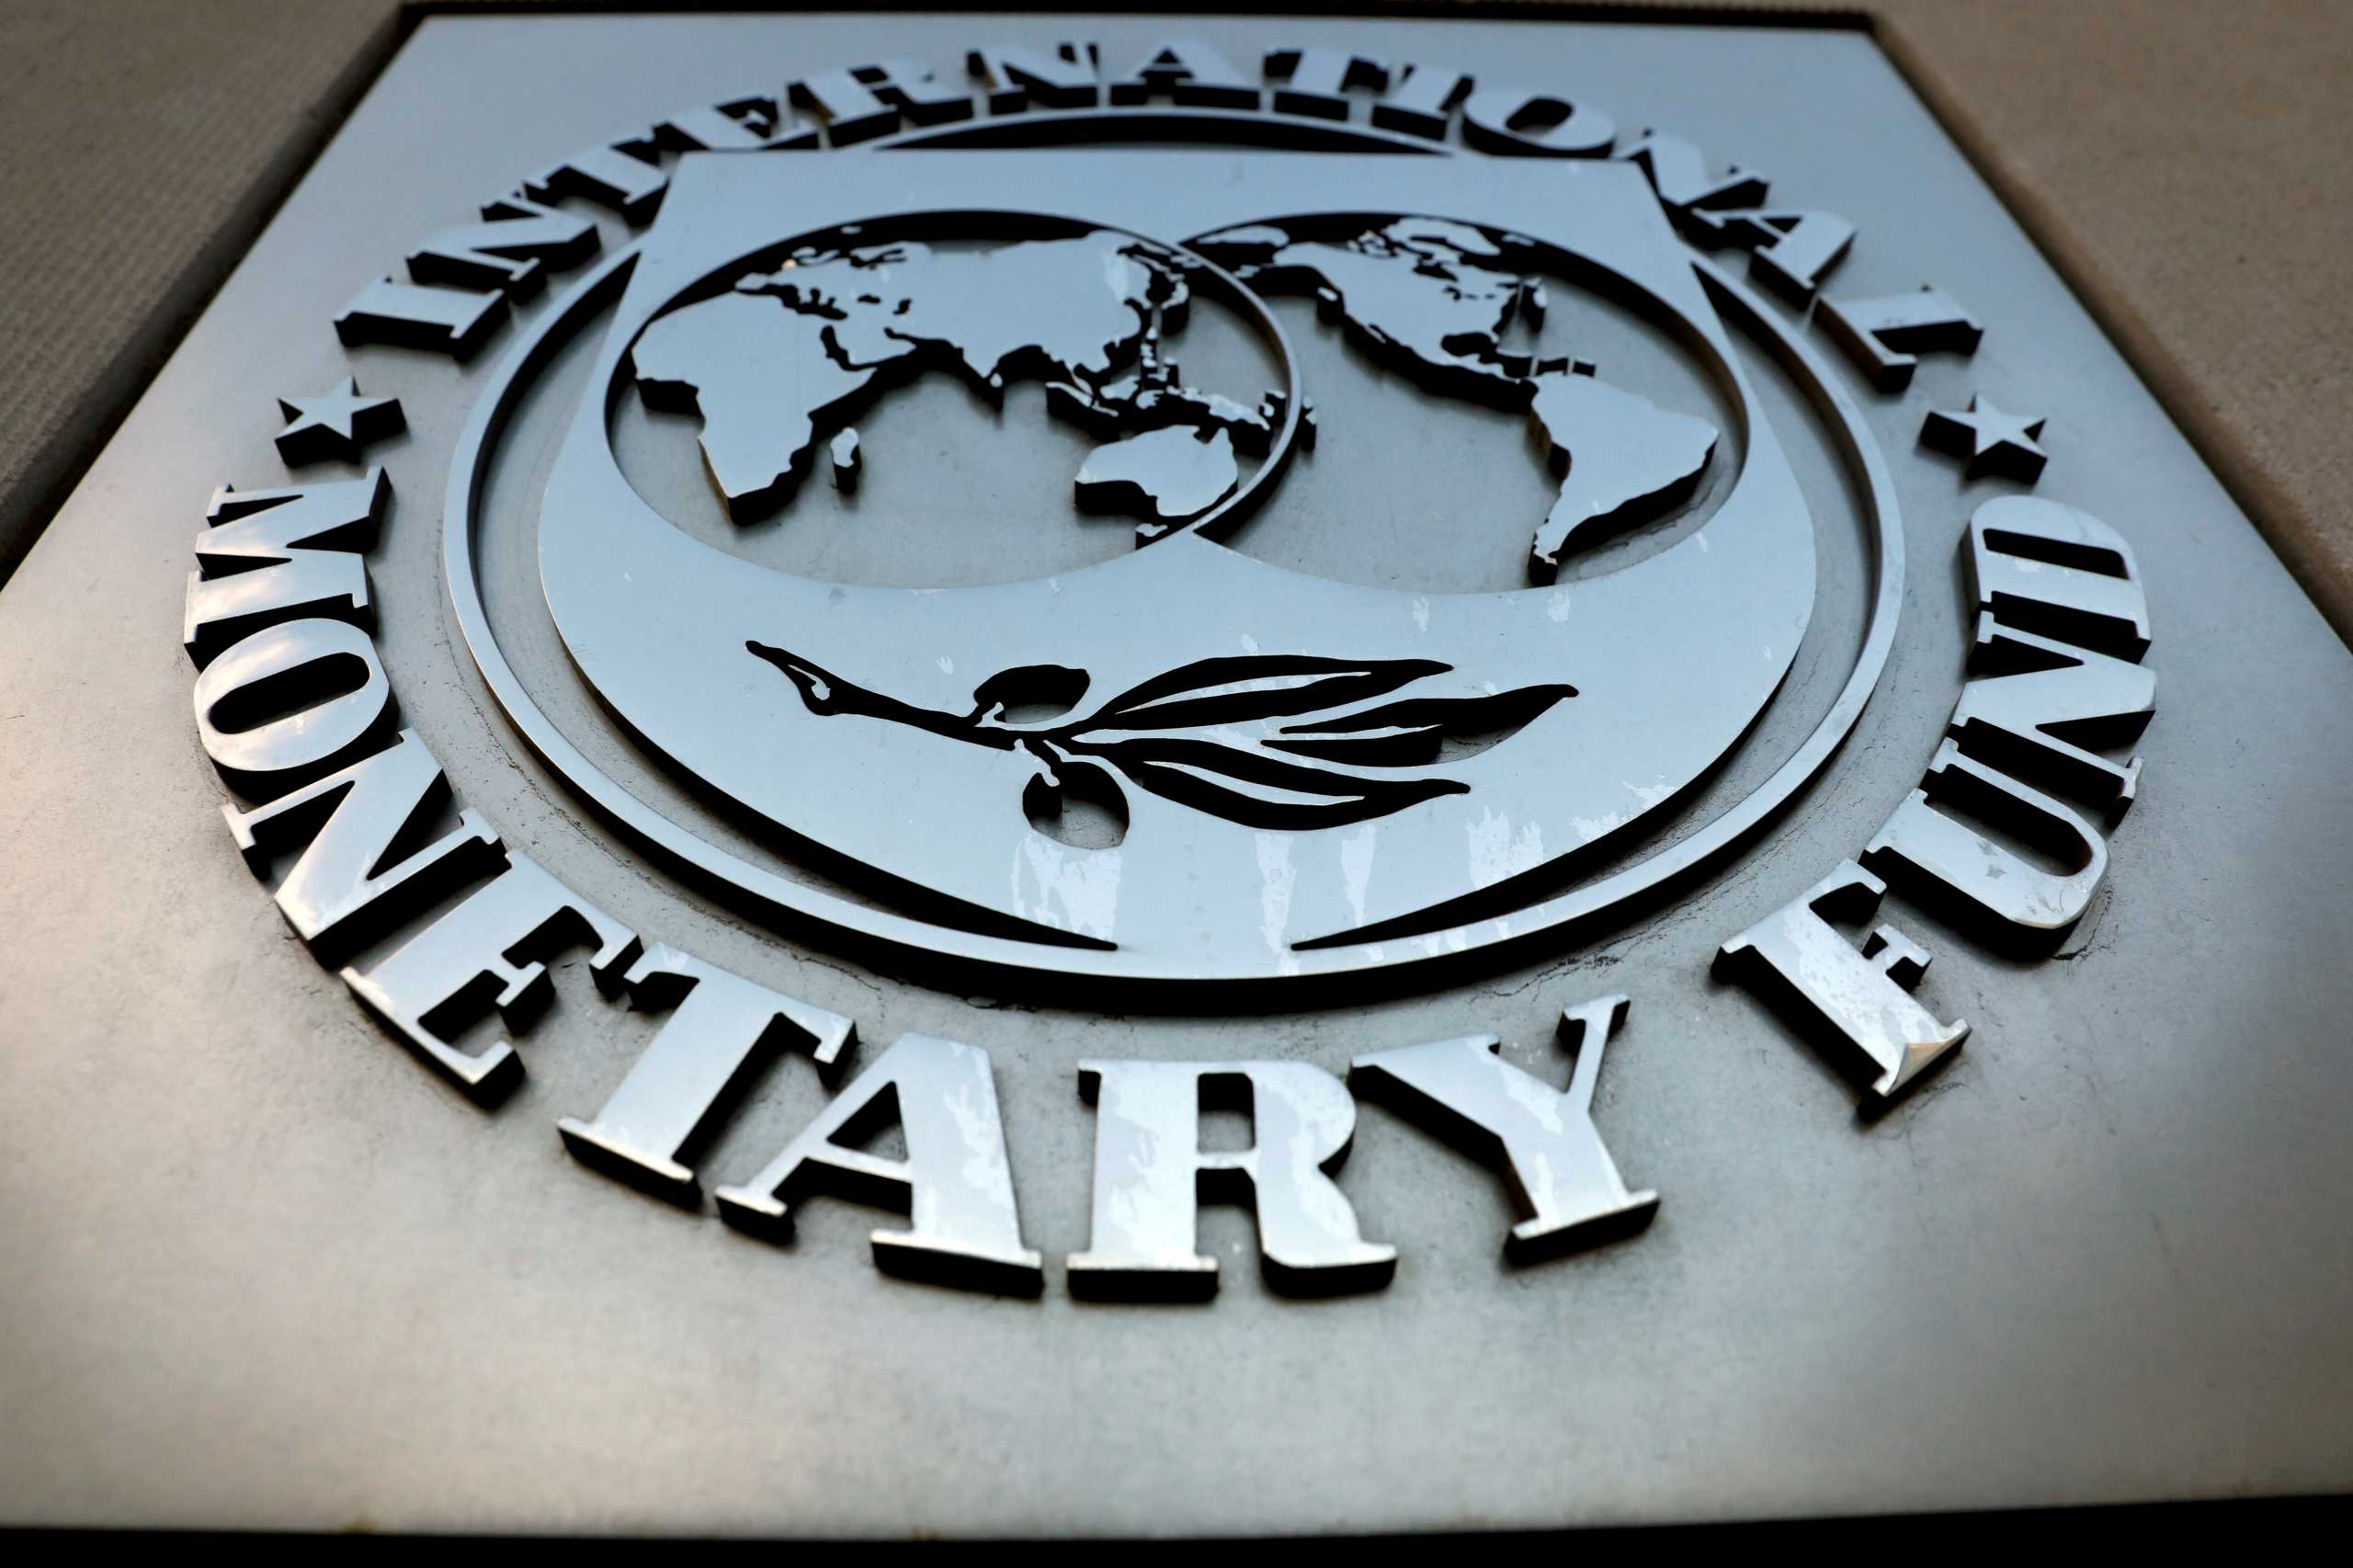 ΔΝΤ: Οι χώρες πρέπει να σχεδιάσουν πολιτικές μείωσης του χρέους τους